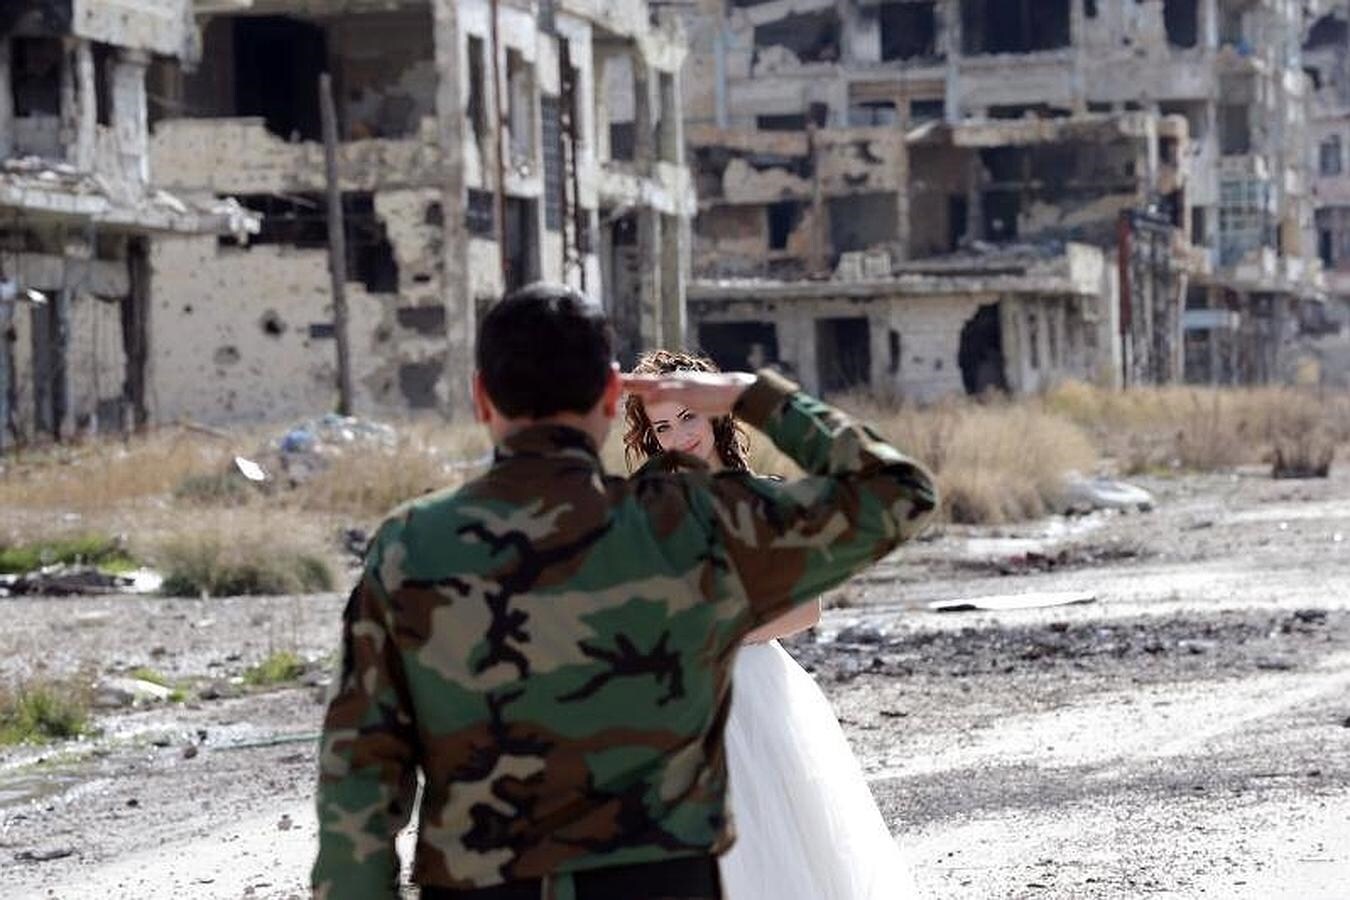 Muchos edificios de la devastada ciudad de Homs se encuentras abandonados y a punto de caerse